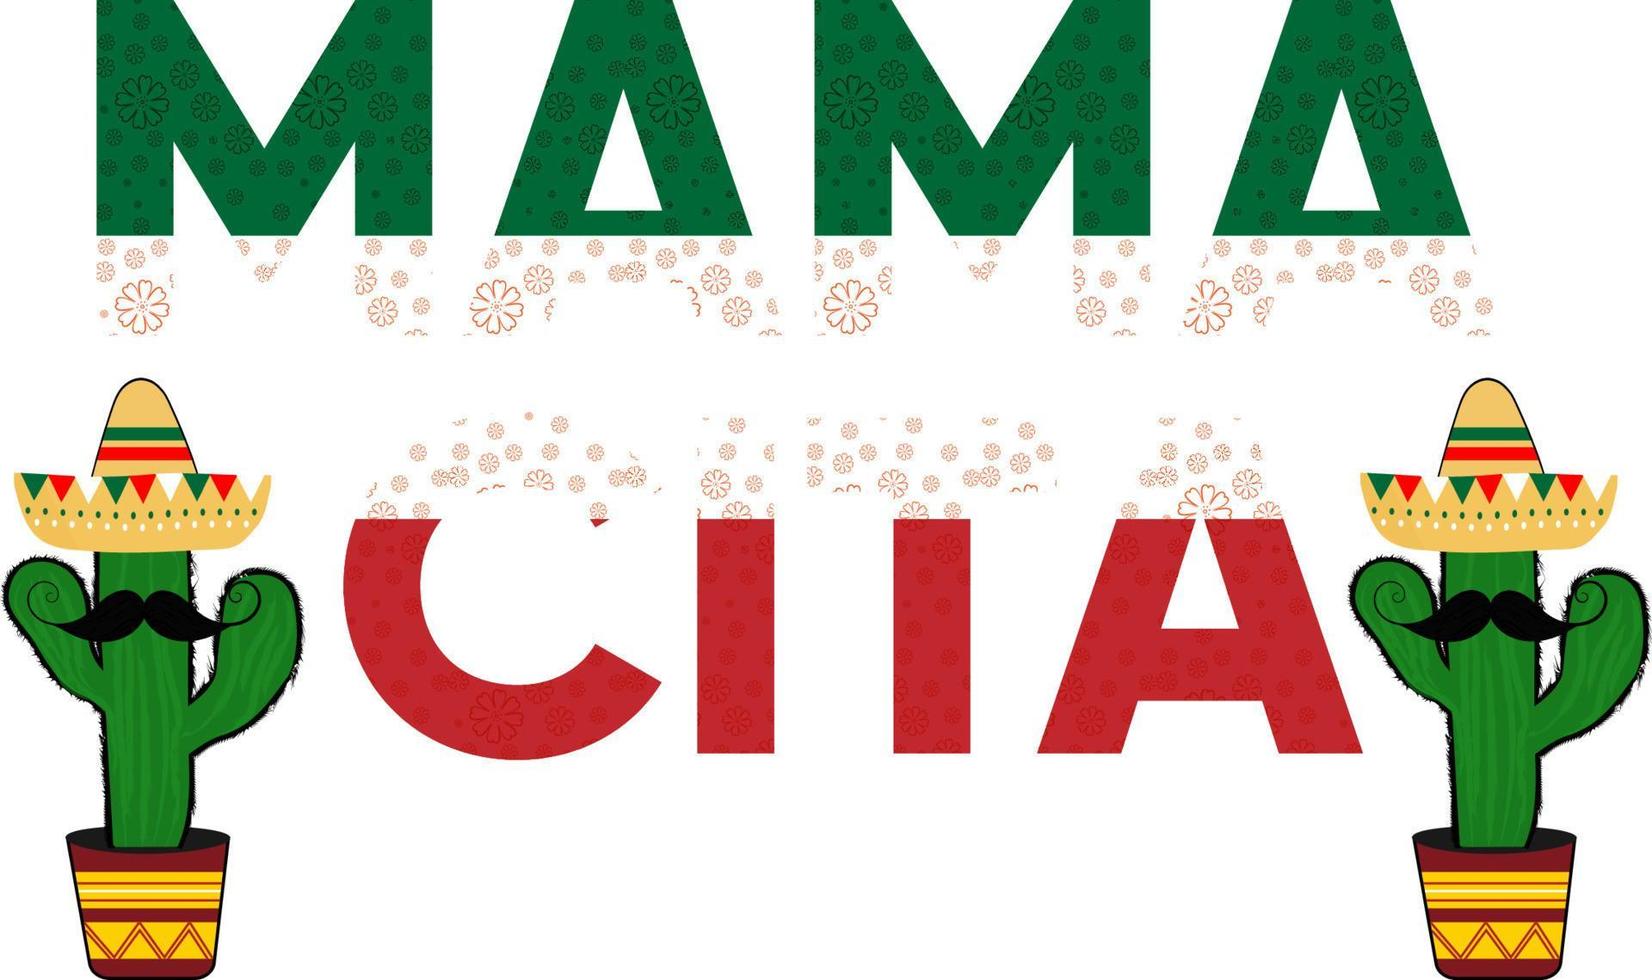 Cinco de Mayo Mama Cita T-Shirt kann auf T-Shirts, Pullovern, Pullovern, Hoodies, Bechern, Aufklebern, Kissen, Taschen, Grußkarten, Abzeichen oder Postern verwendet werden vektor